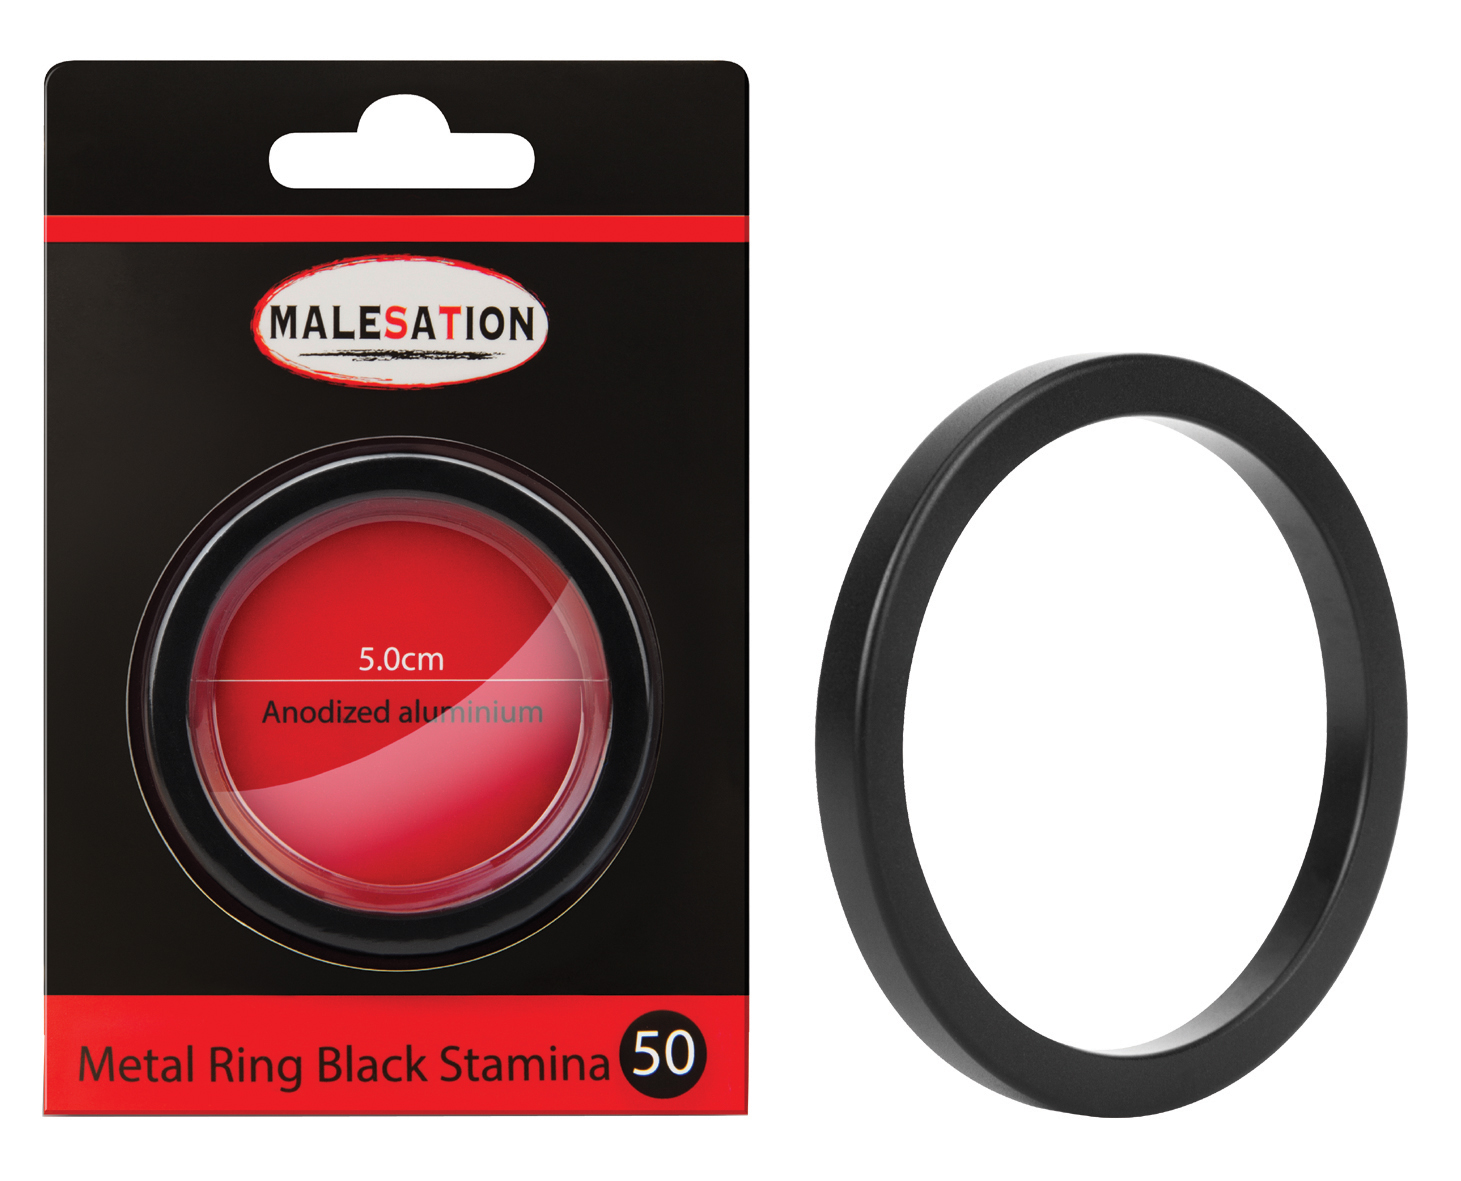 MALESATION Metal Ring Black Stamina 50